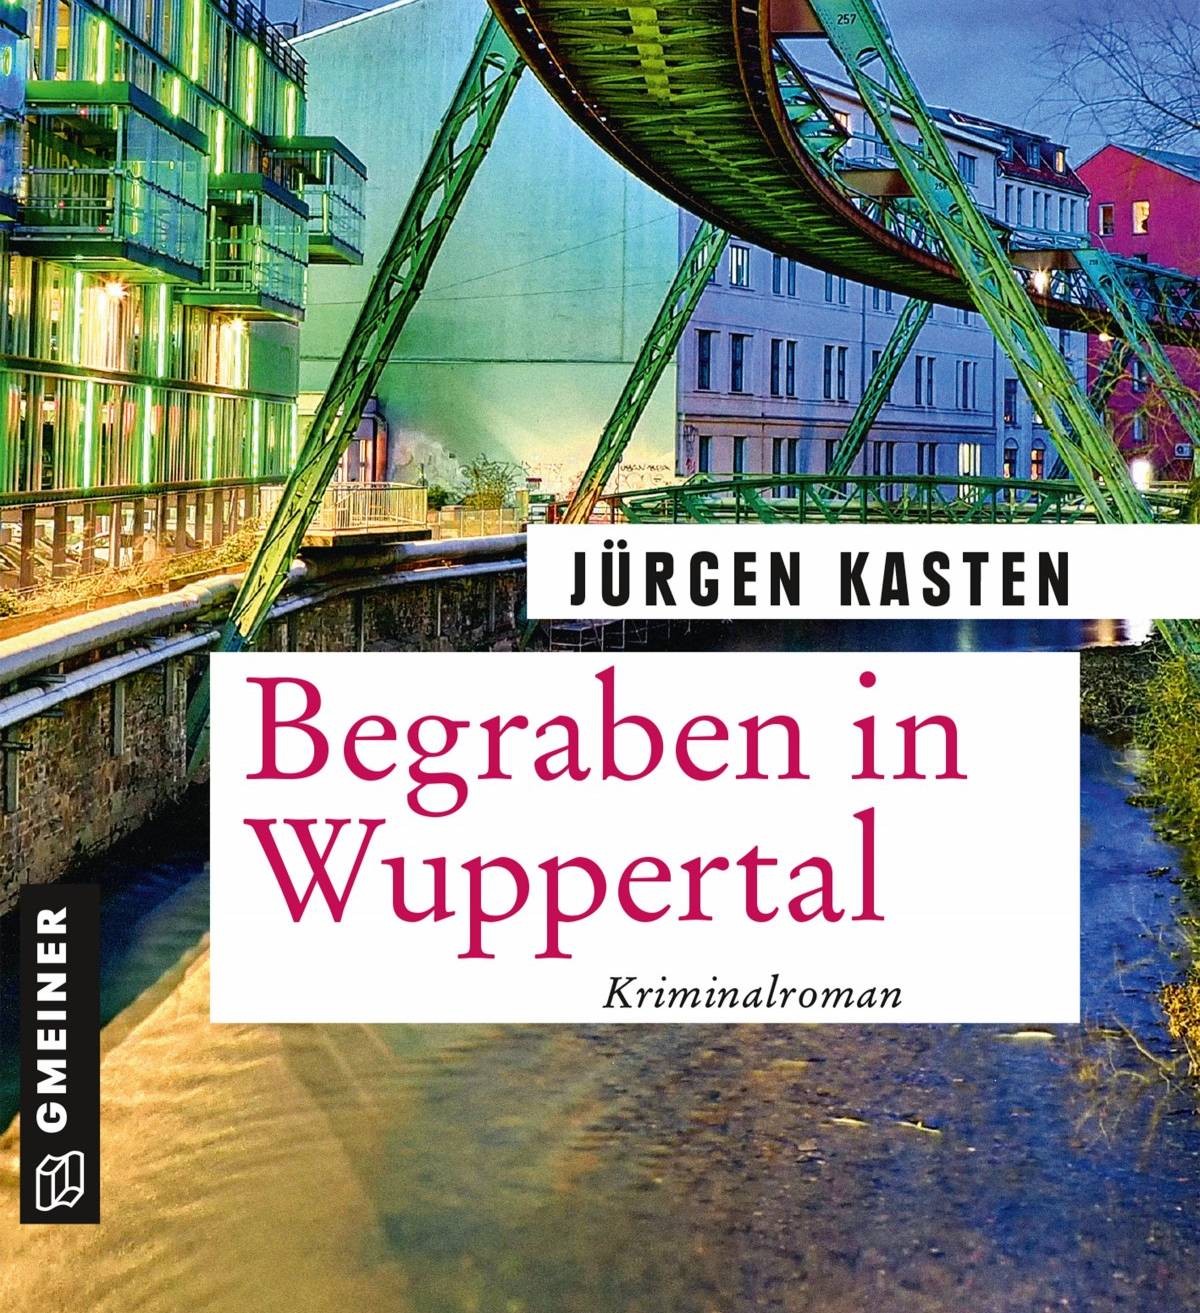  "Begraben in Wuppertal" von Jürgen Kasten ist im Gmeiner-Verlag erschienen und kostet im Buchhandel 12 Euro. 